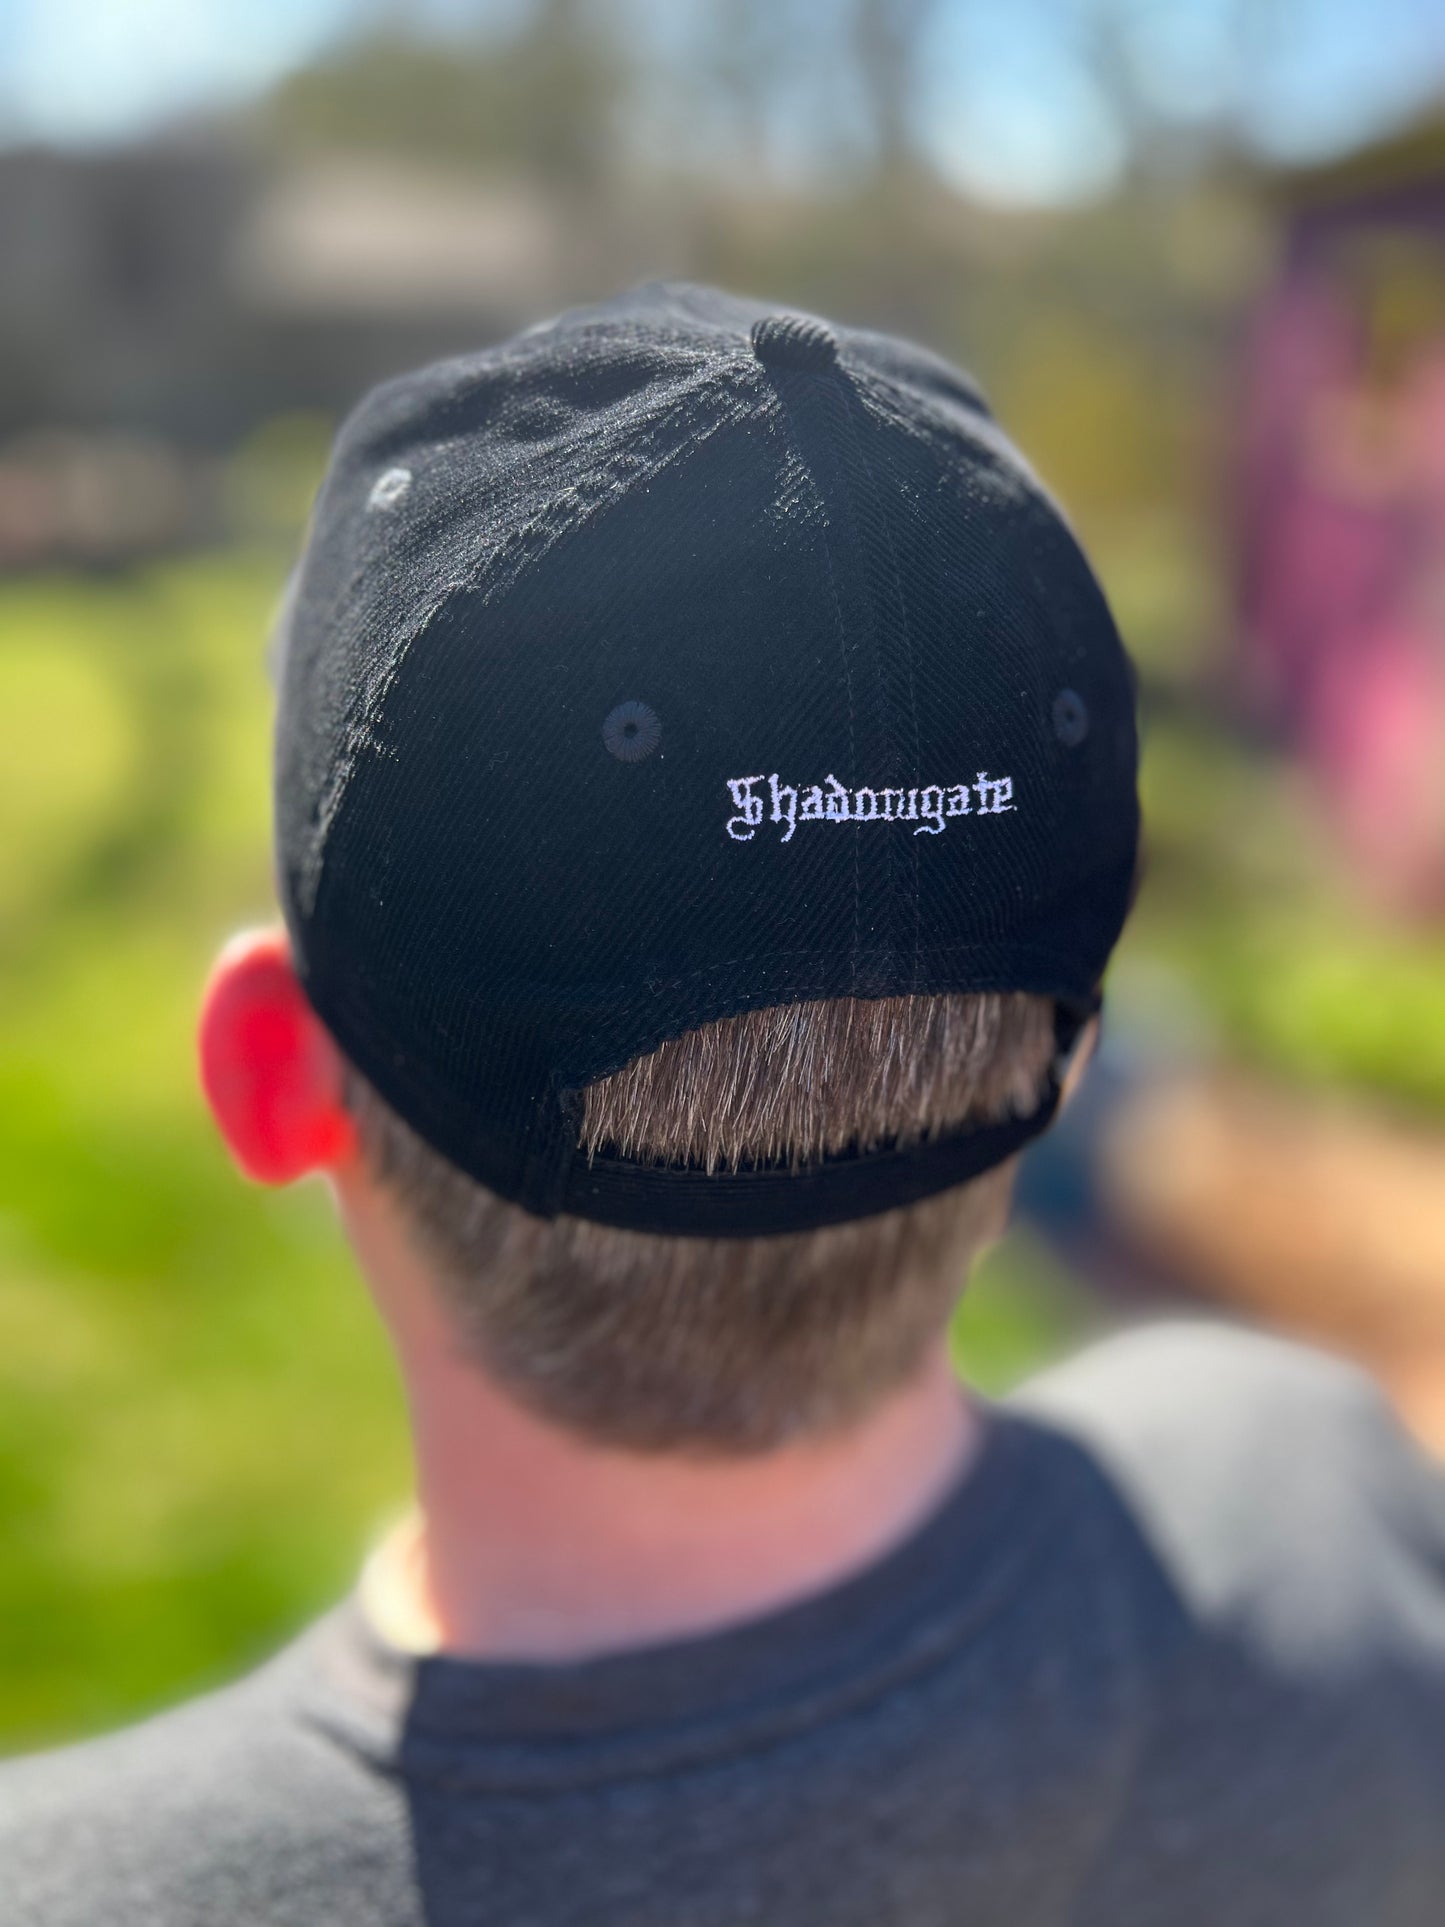 Shadowgate Death hat